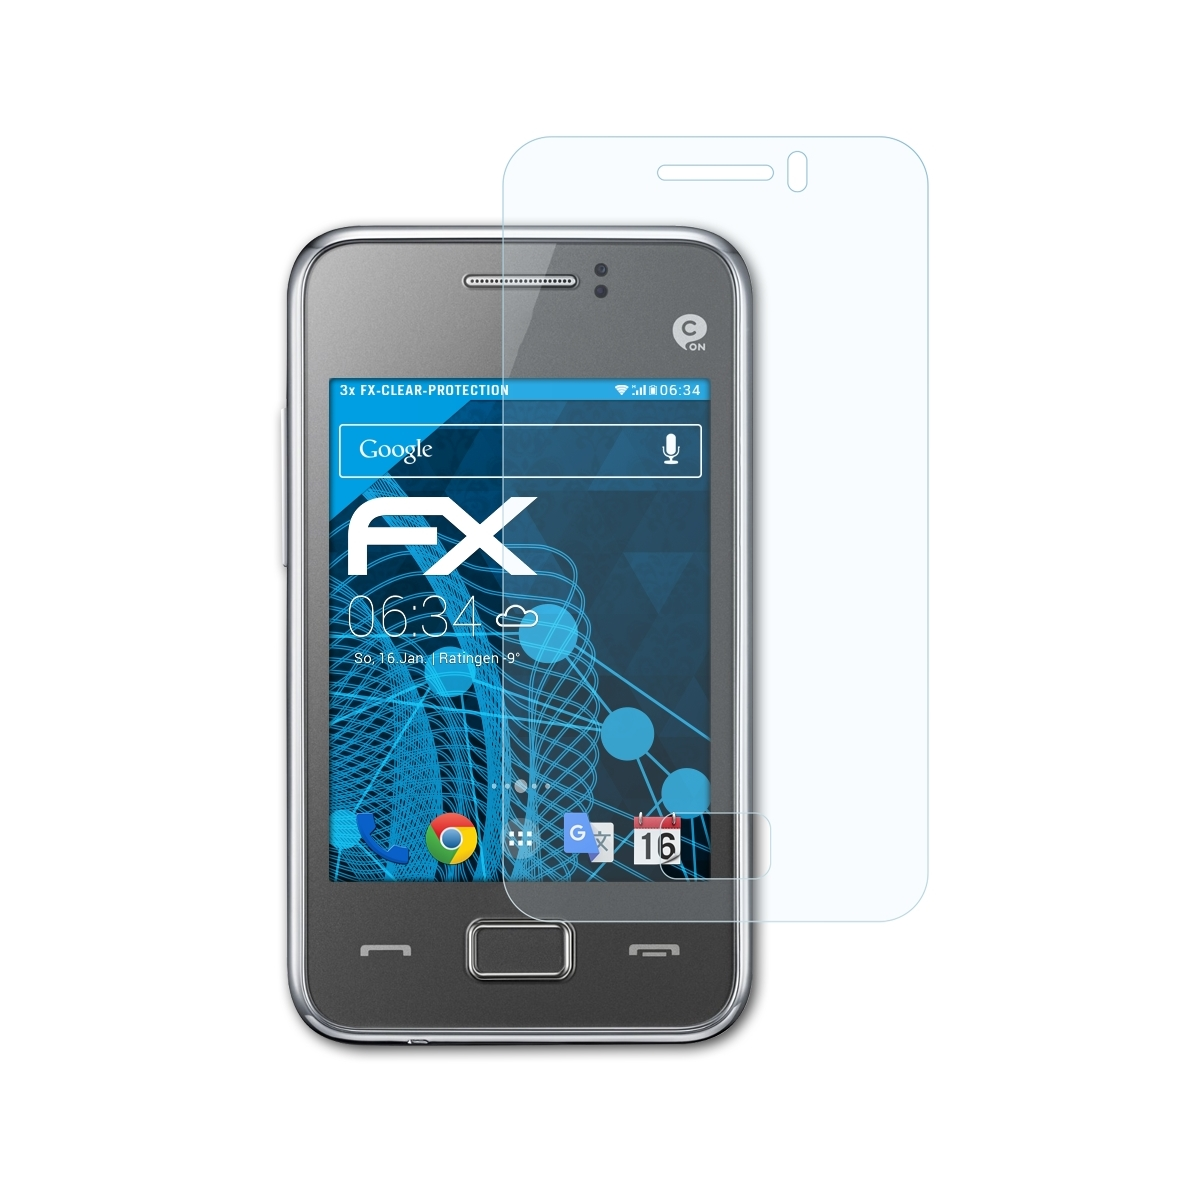 Samsung Rex 3x (GT-S5222R)) 80 ATFOLIX FX-Clear Displayschutz(für